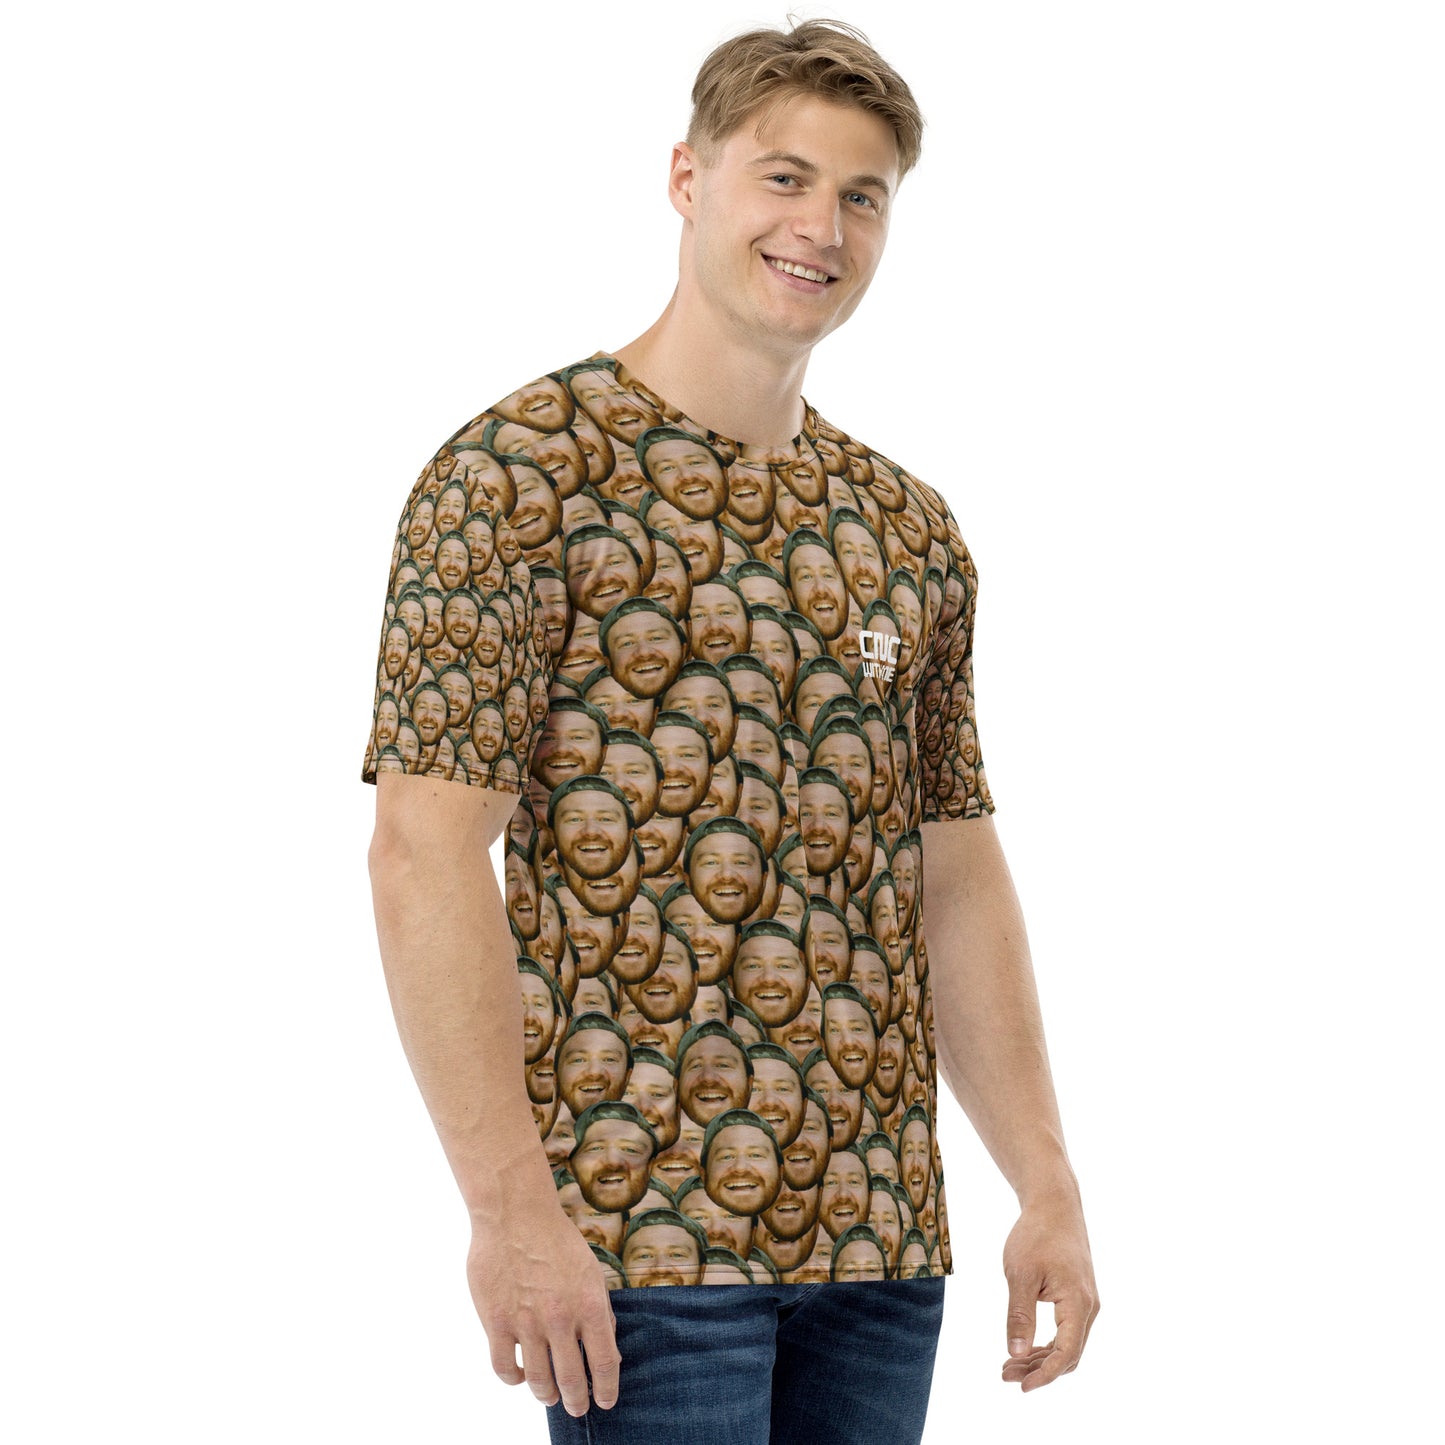 Hamouflage t-shirt